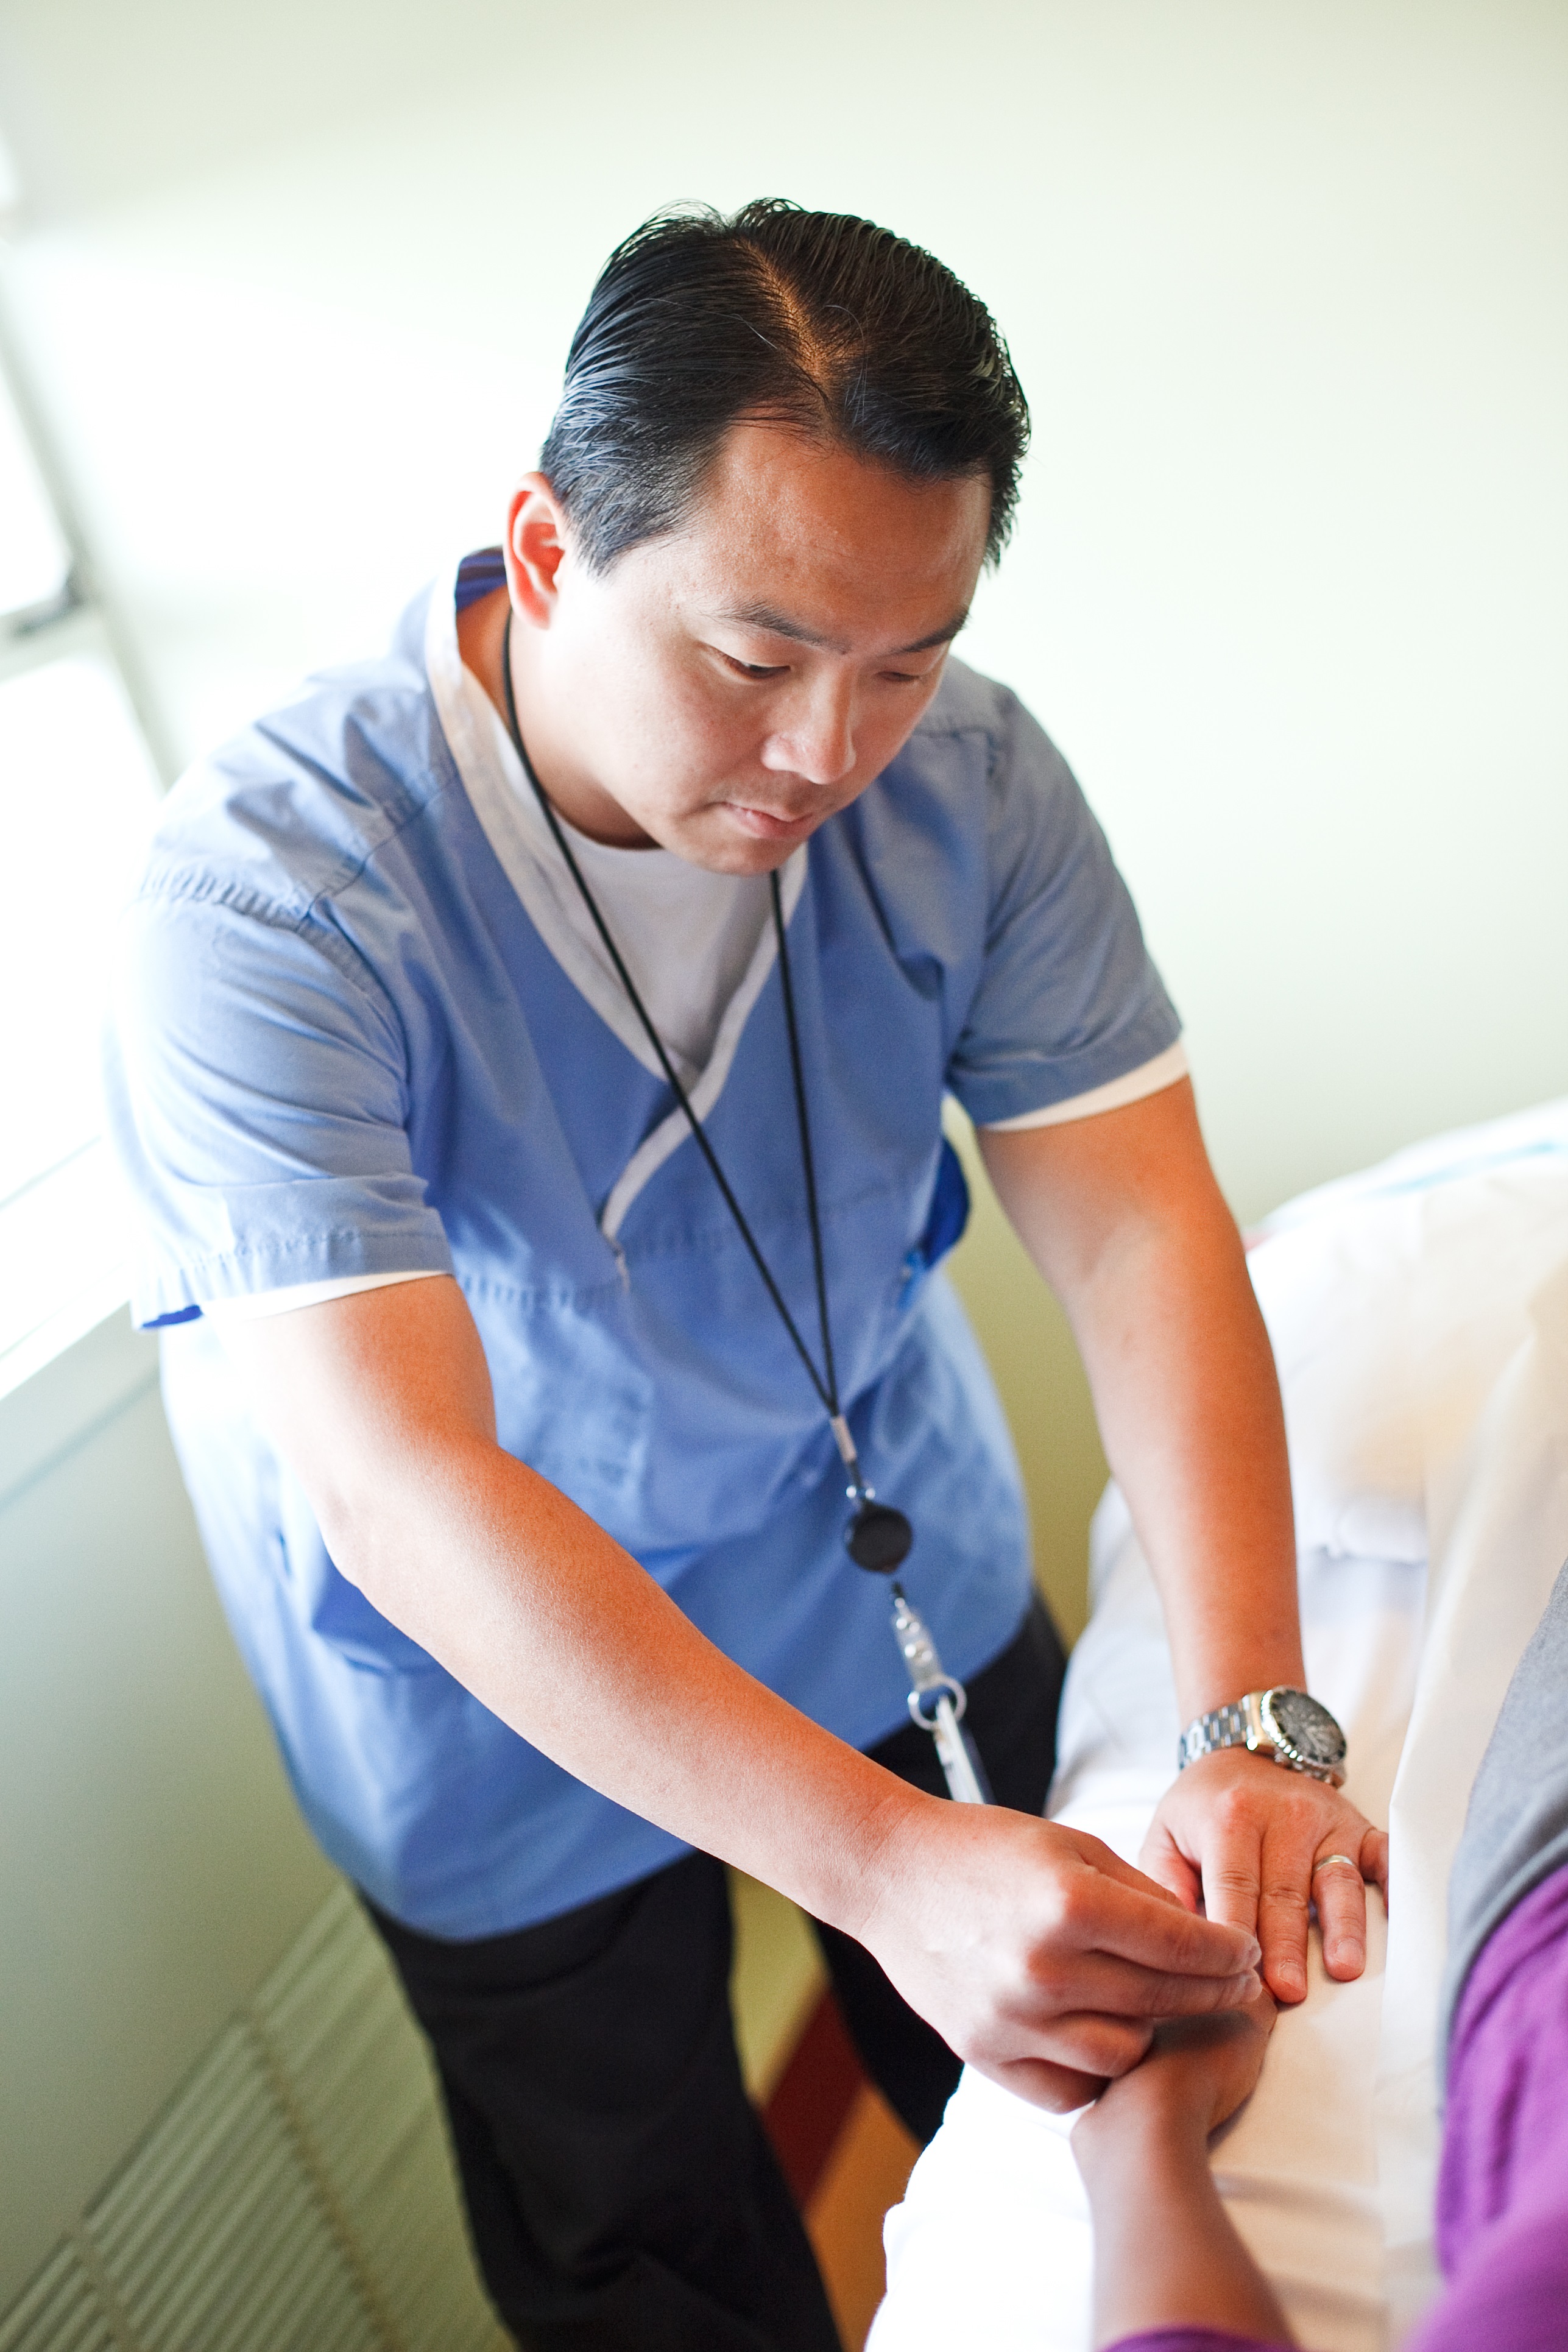 Marcos Hsu examining a patient